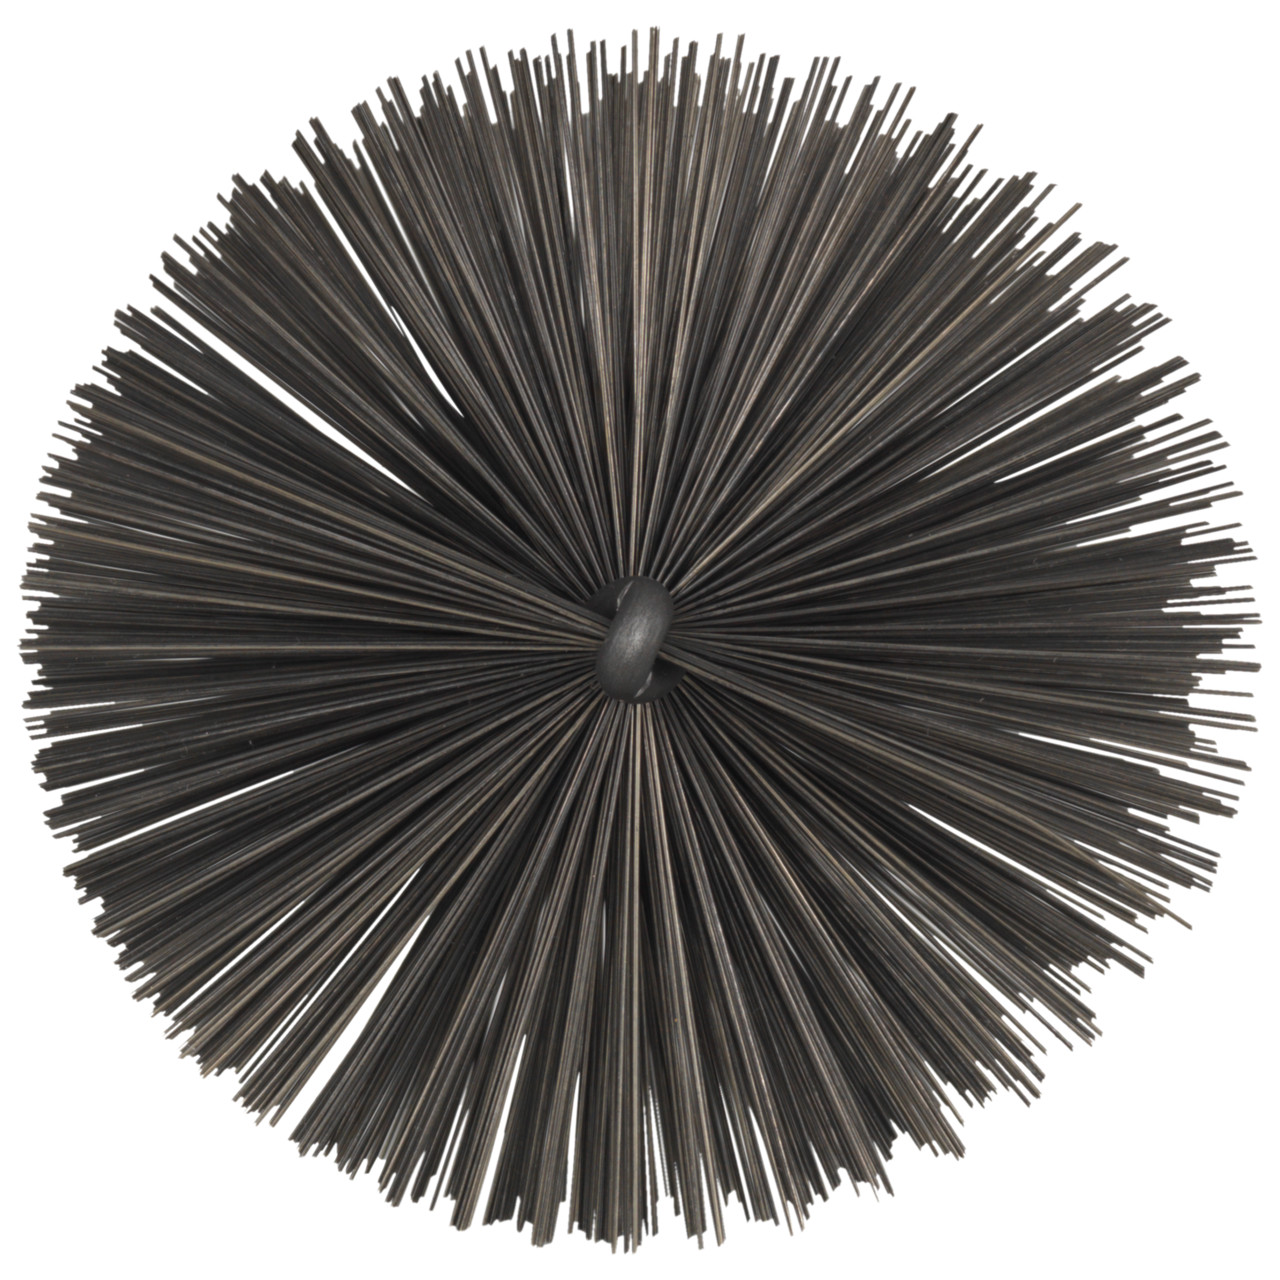 Tyrolit Brosse tubulaire avec filetage extérieur DxGE-I 75xW1/2-160 Pour l'acier, forme : 18ROGDG - (brosse tubulaire), art. 34203607